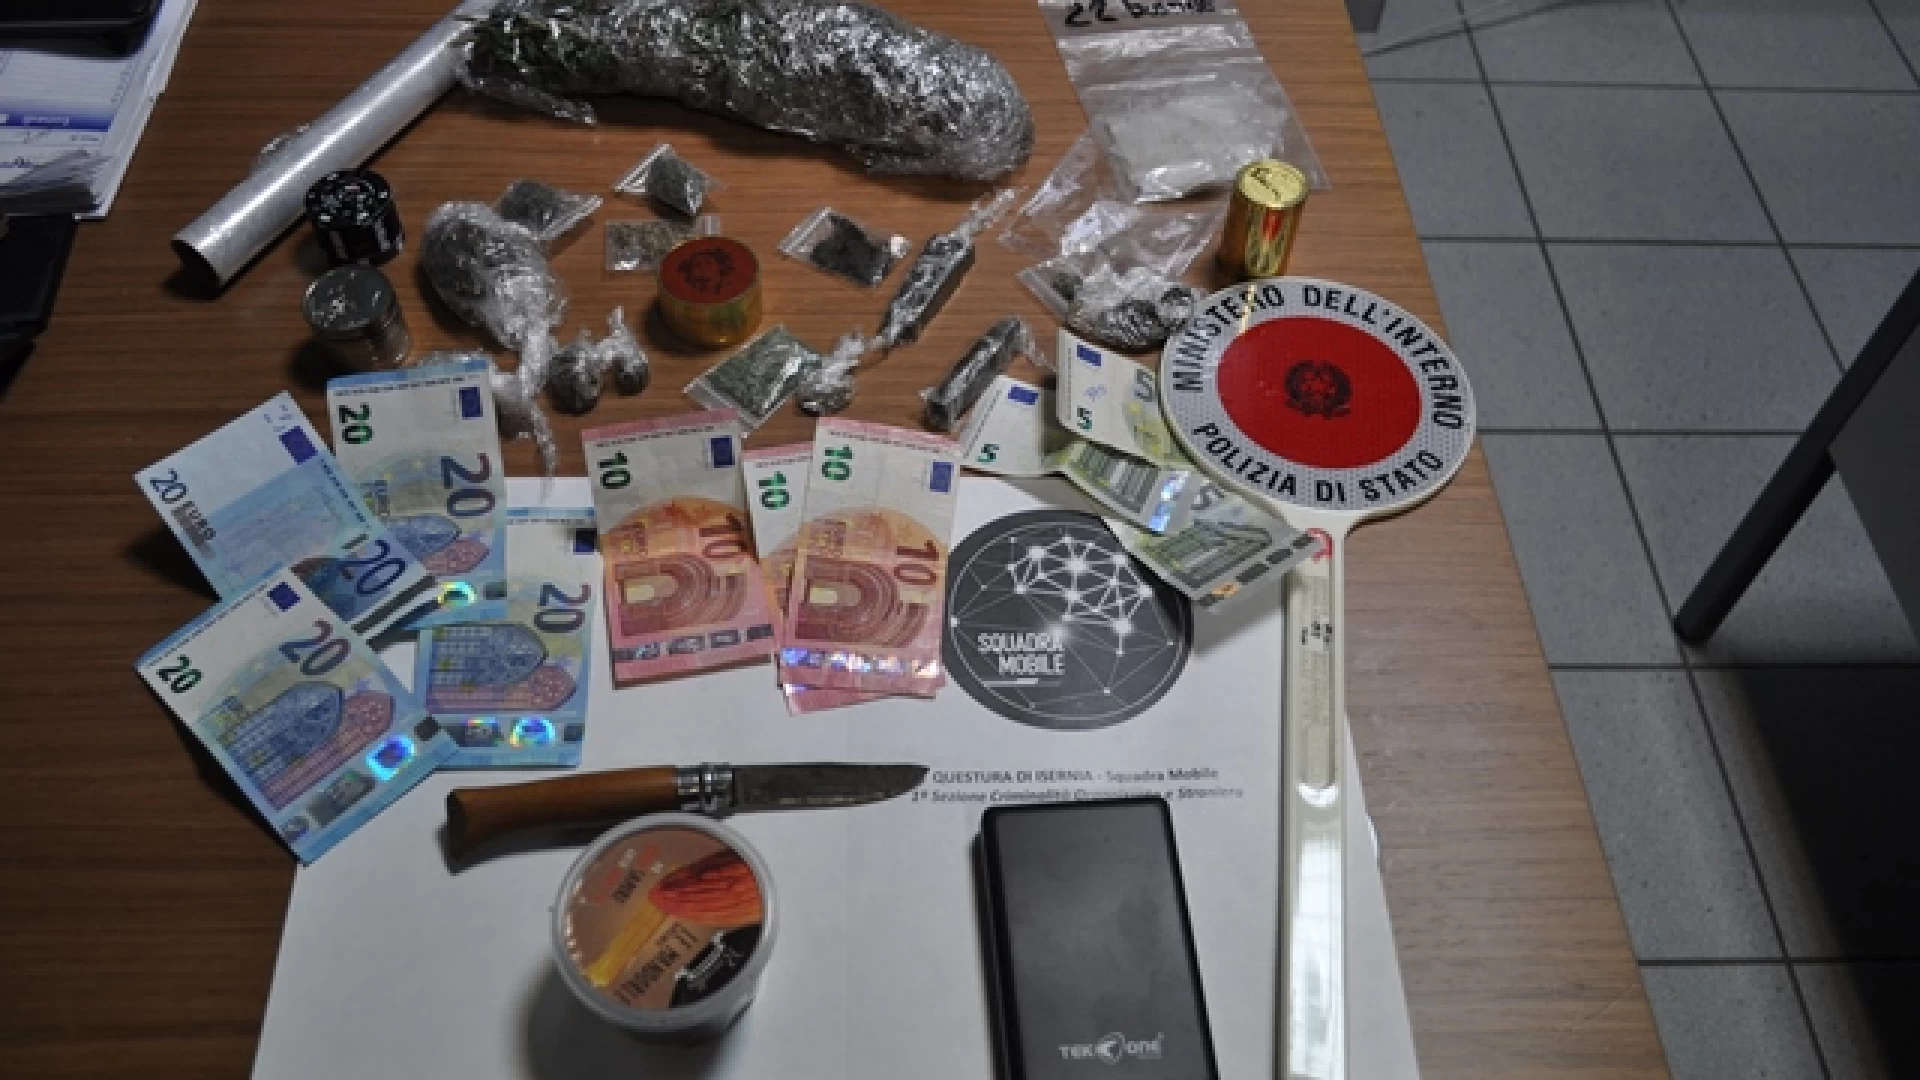 Isernia: la Polizia arresta un 35enne con domicilio a Cerro al Volturno per possesso di sostanze stupefacenti. Guarda il video